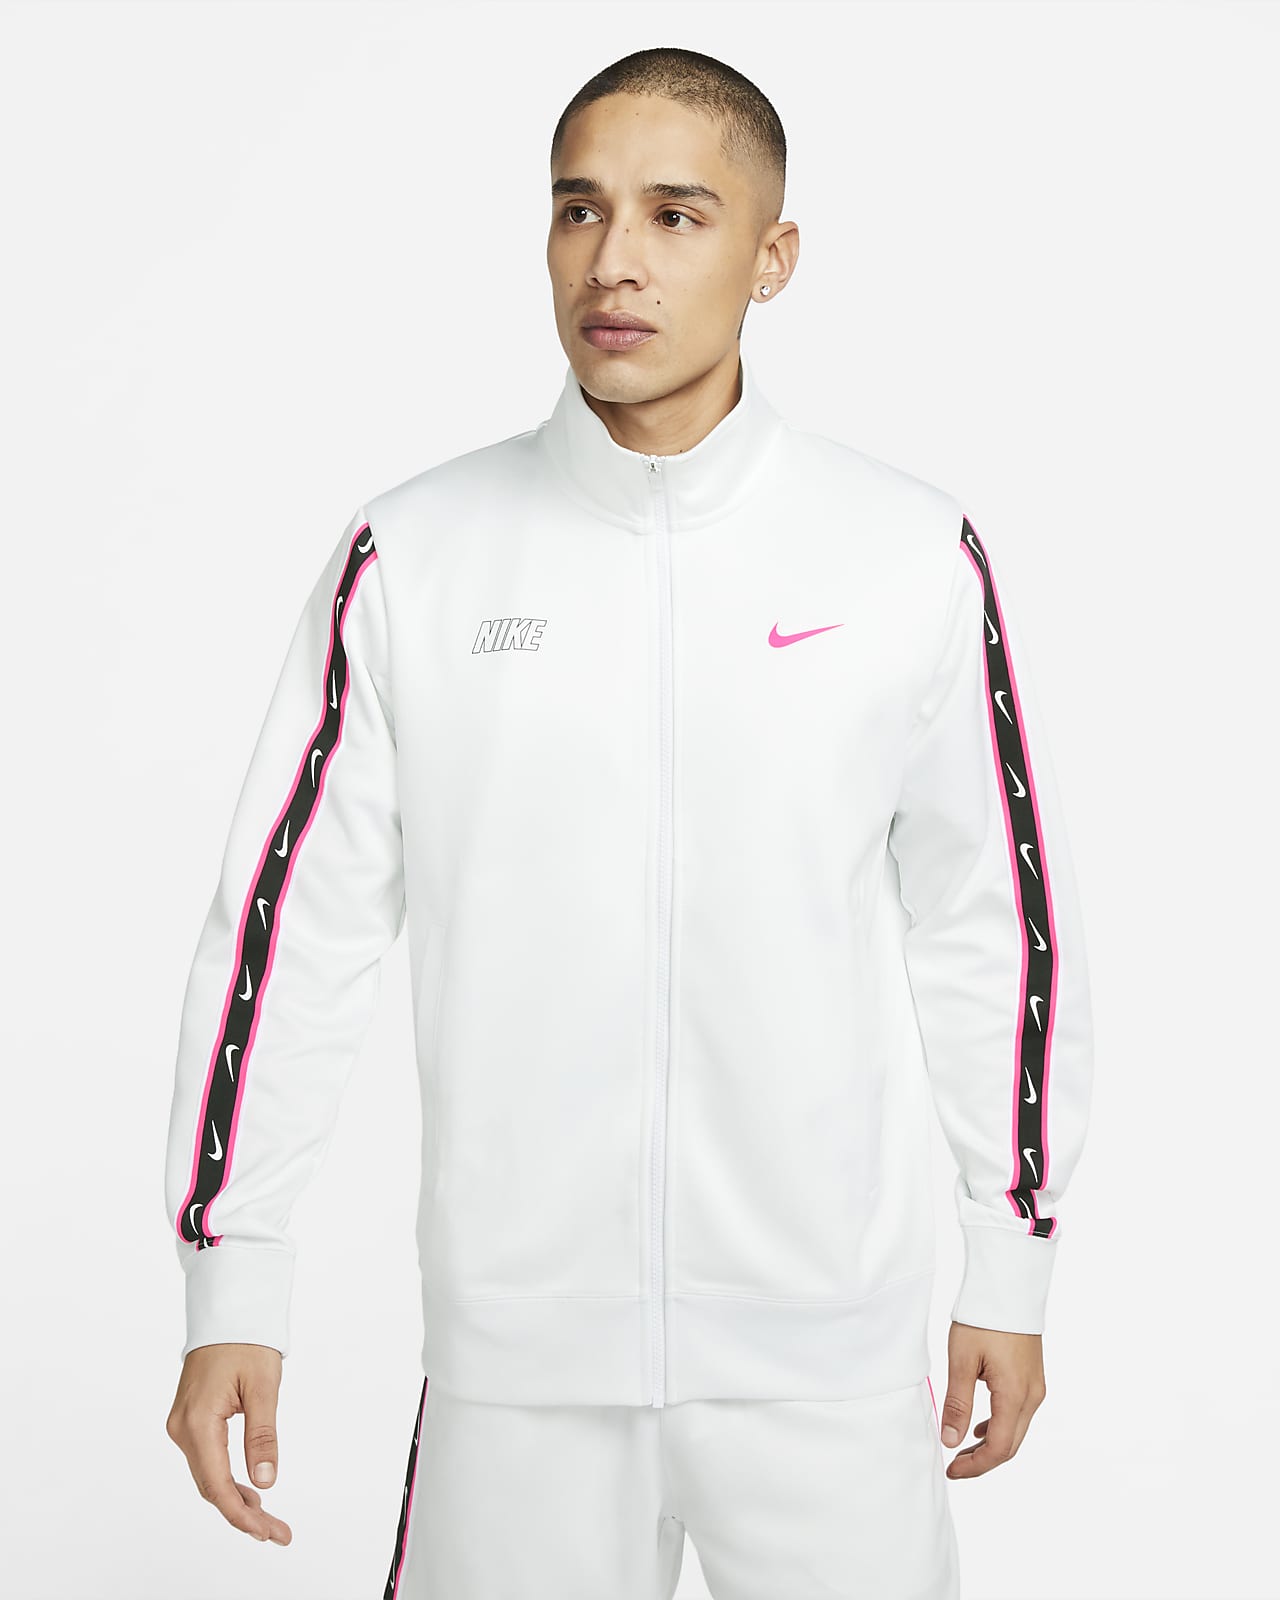 Nike Repeat Men's Jacket. UK